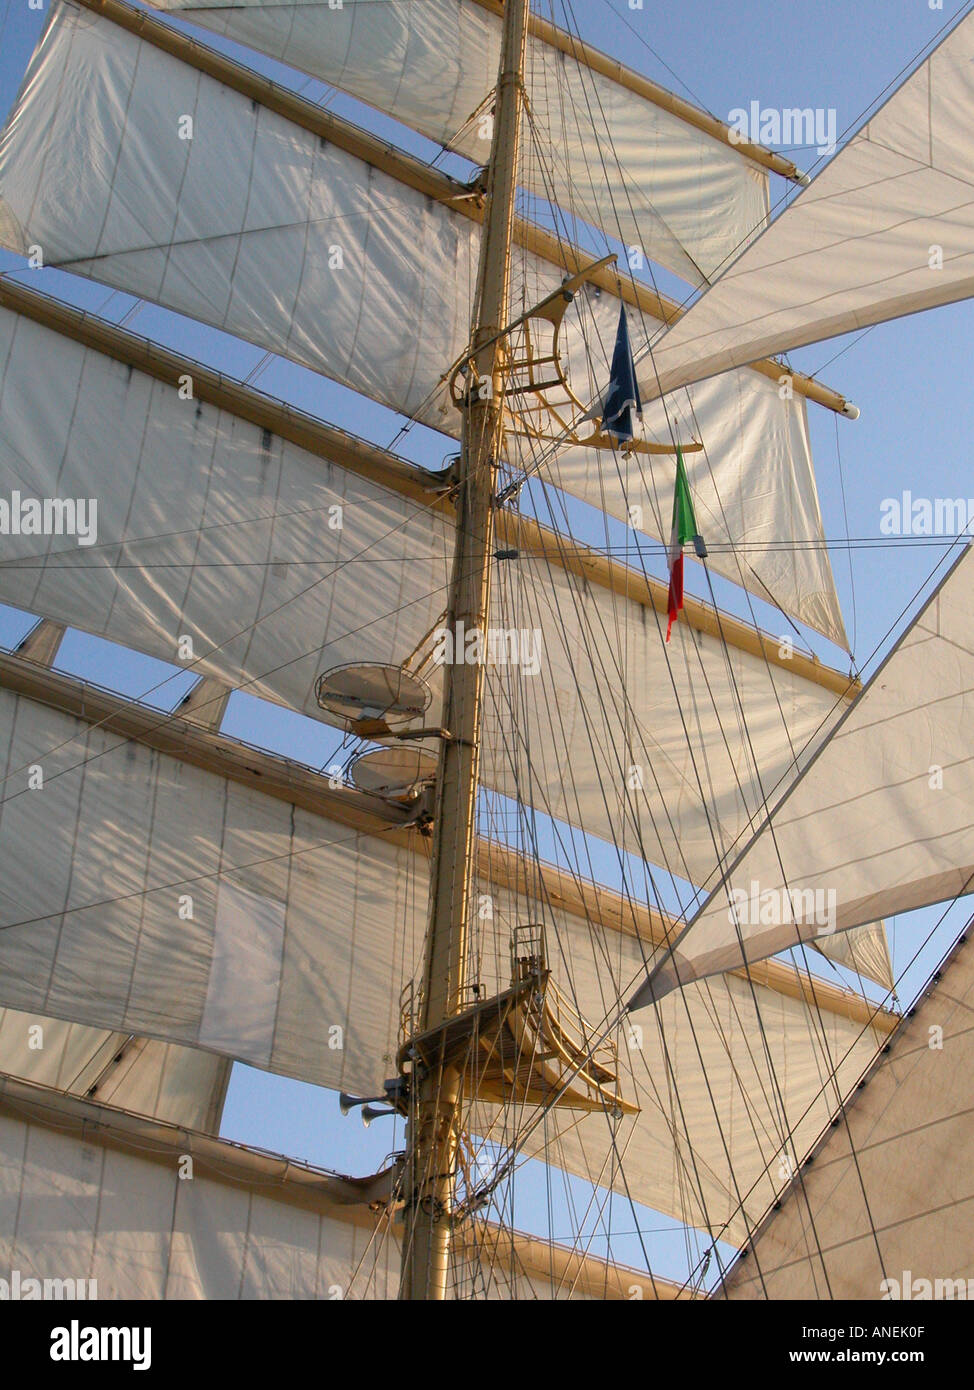 Five masted sailing ship Royal Clipper Stock Photo